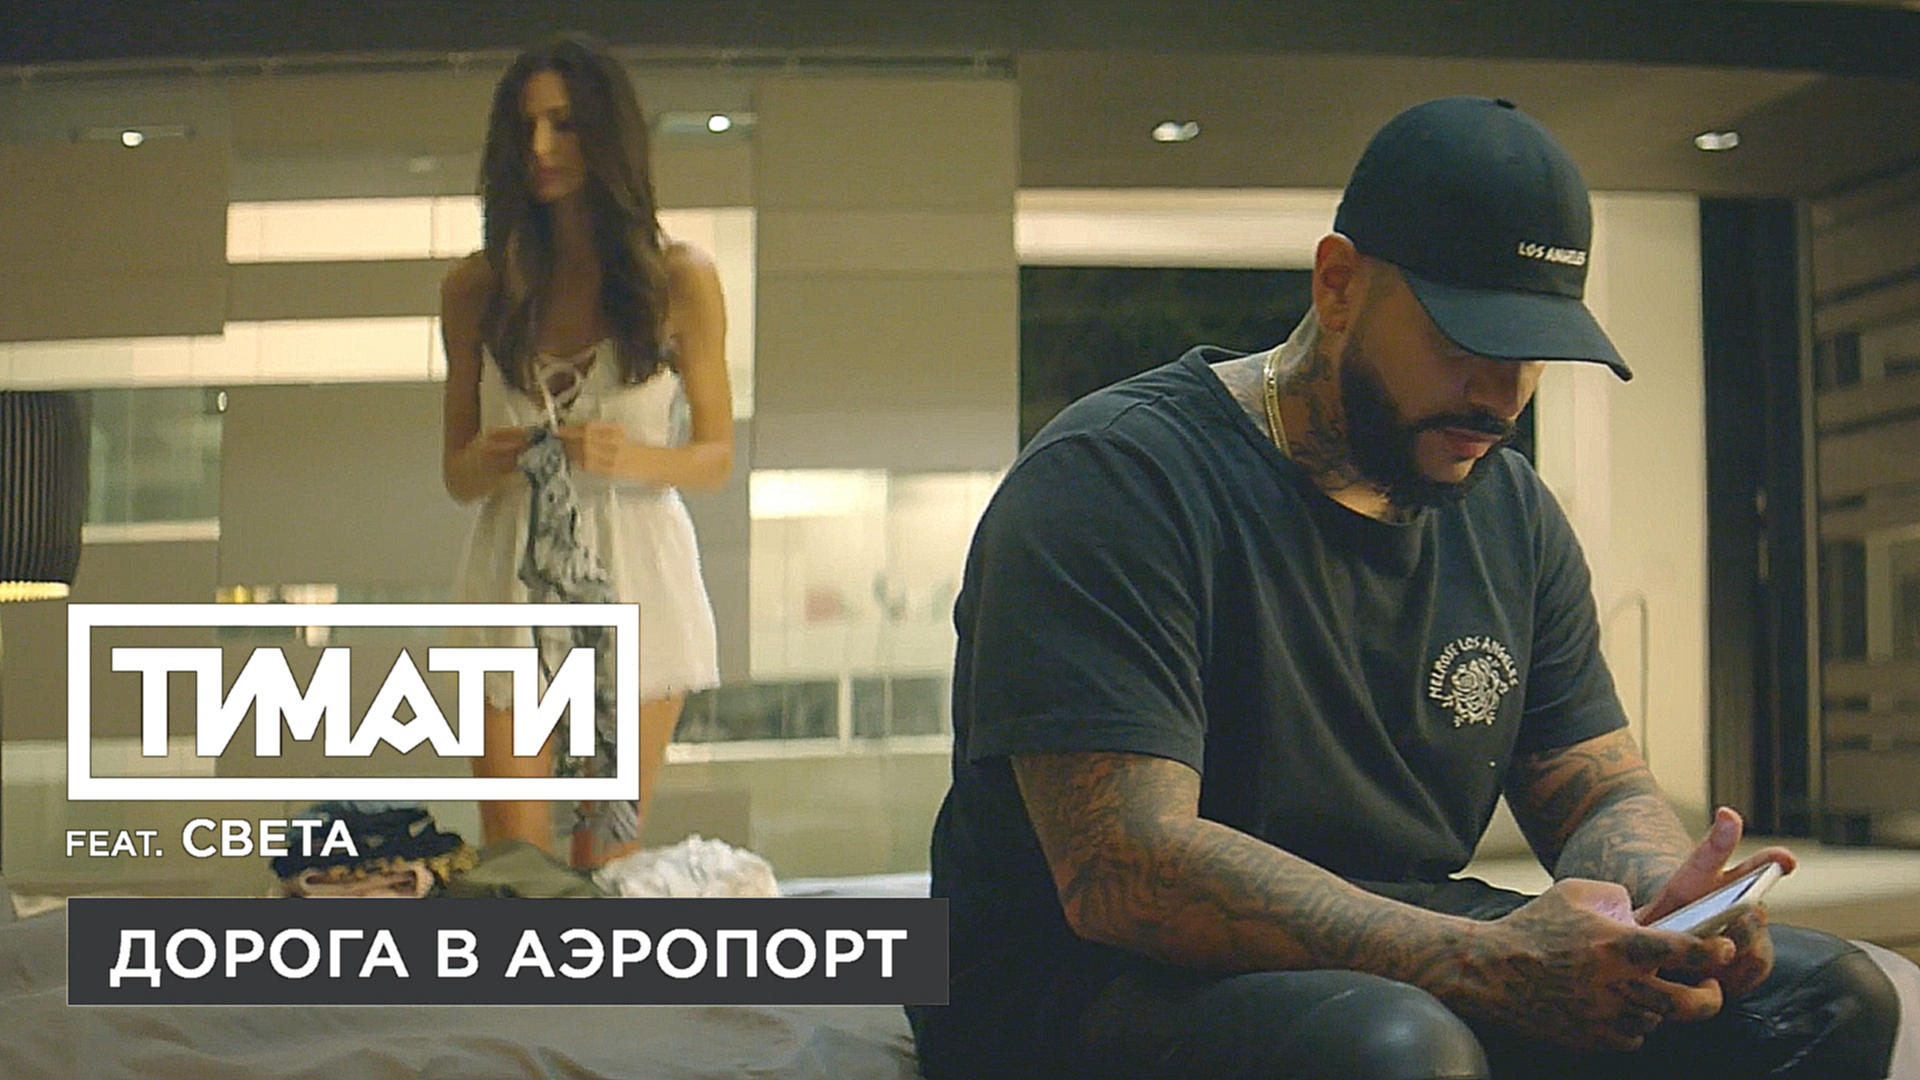 Тимати feat. Света - Дорога в аэропорт (премьера клипа, 2017) - видеоклип на песню